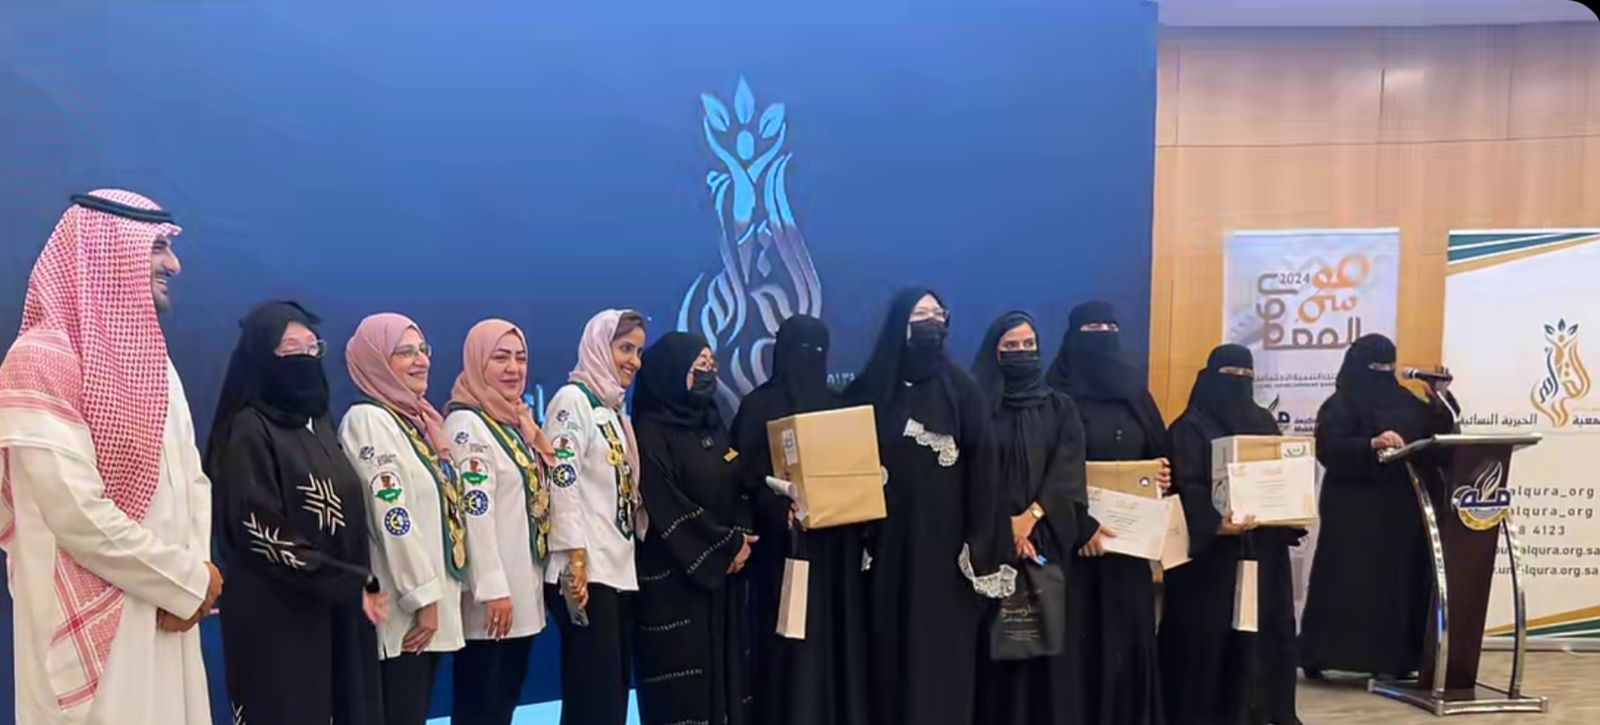 ختام وتكريم الفائزين في فعالية موسم المعمول التابعة لجمعية ام القرى الخيرية النسائية بمكة